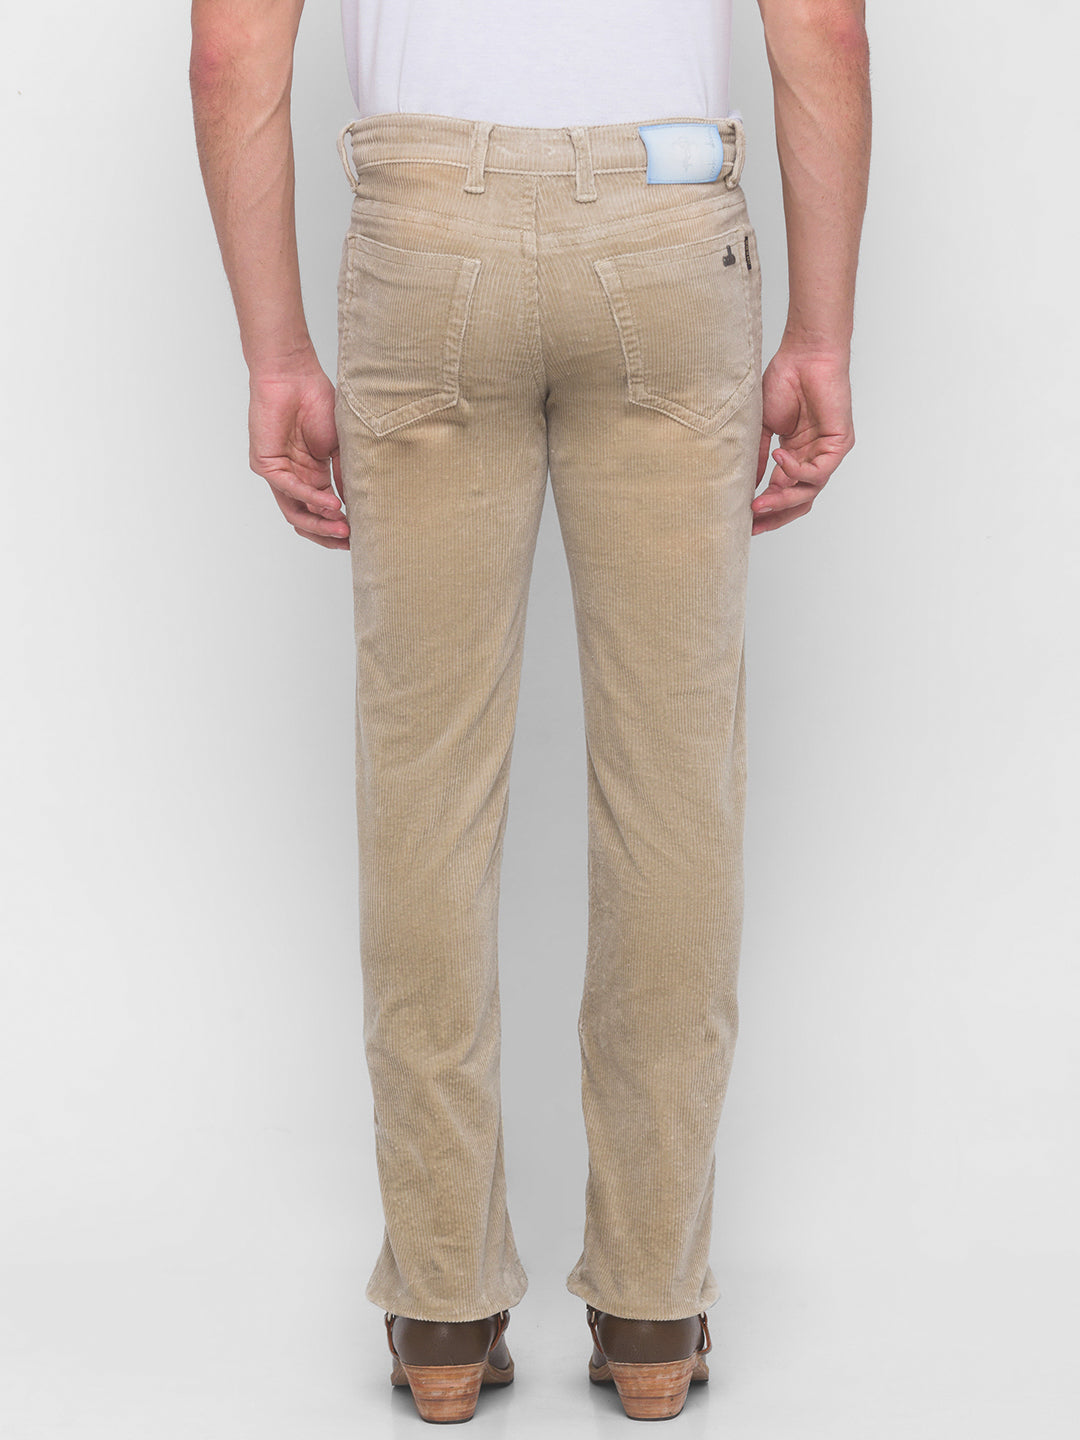 Corduroy Pants  Buy Corduroy Pants online at Best Prices in India   Flipkartcom